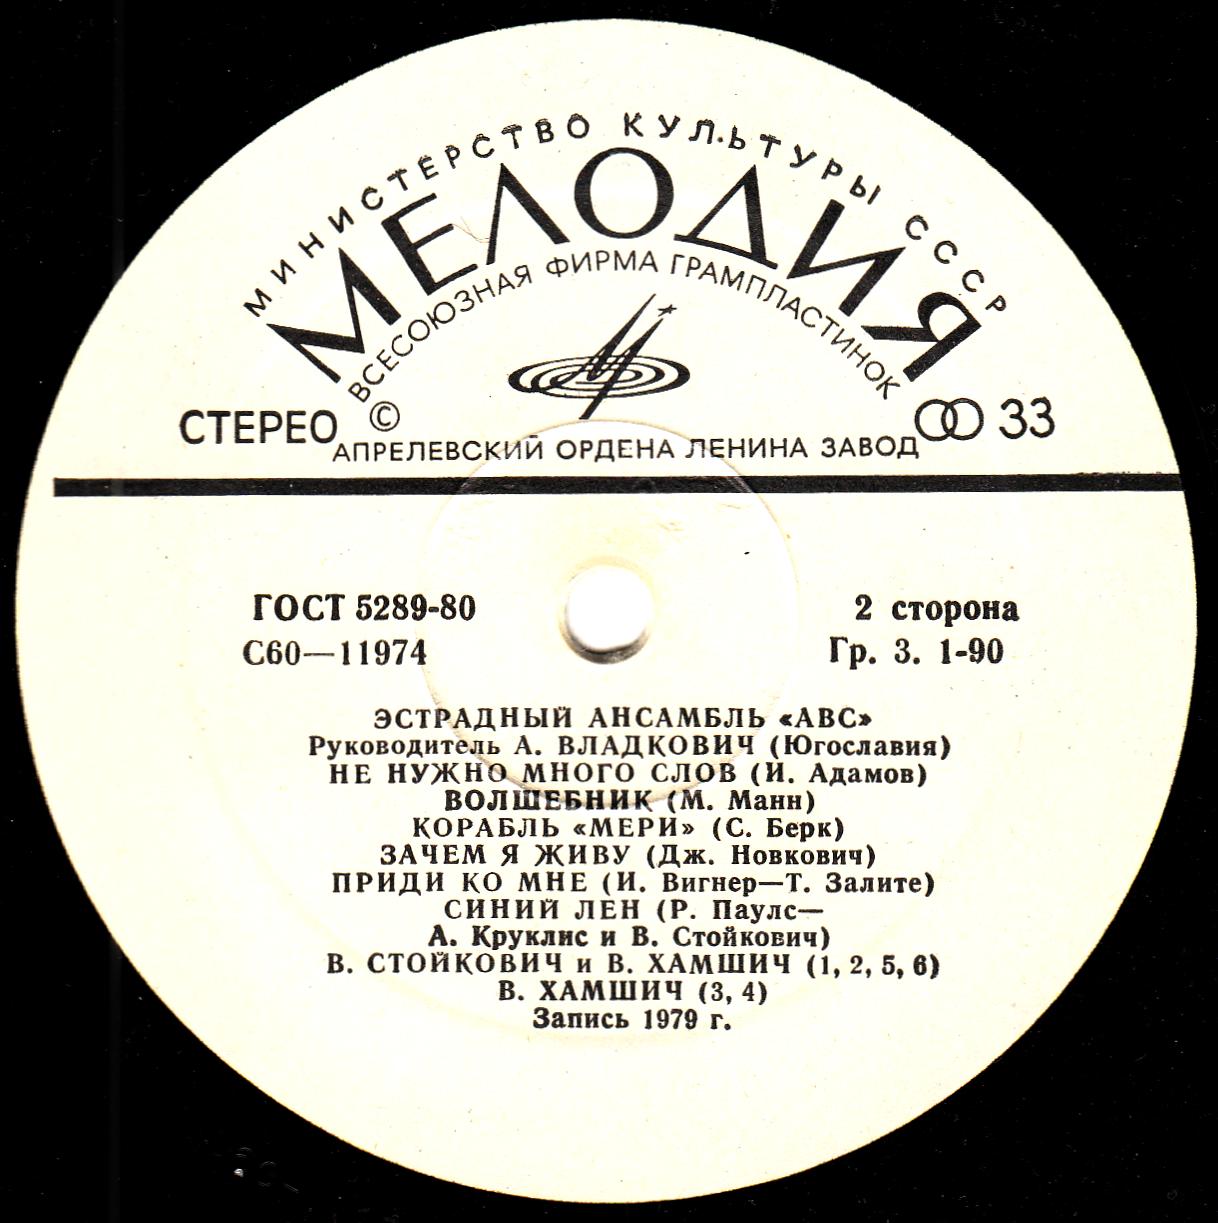 «АВС», эстрадный ансамбль (Югославия), руководитель – А. Владкович